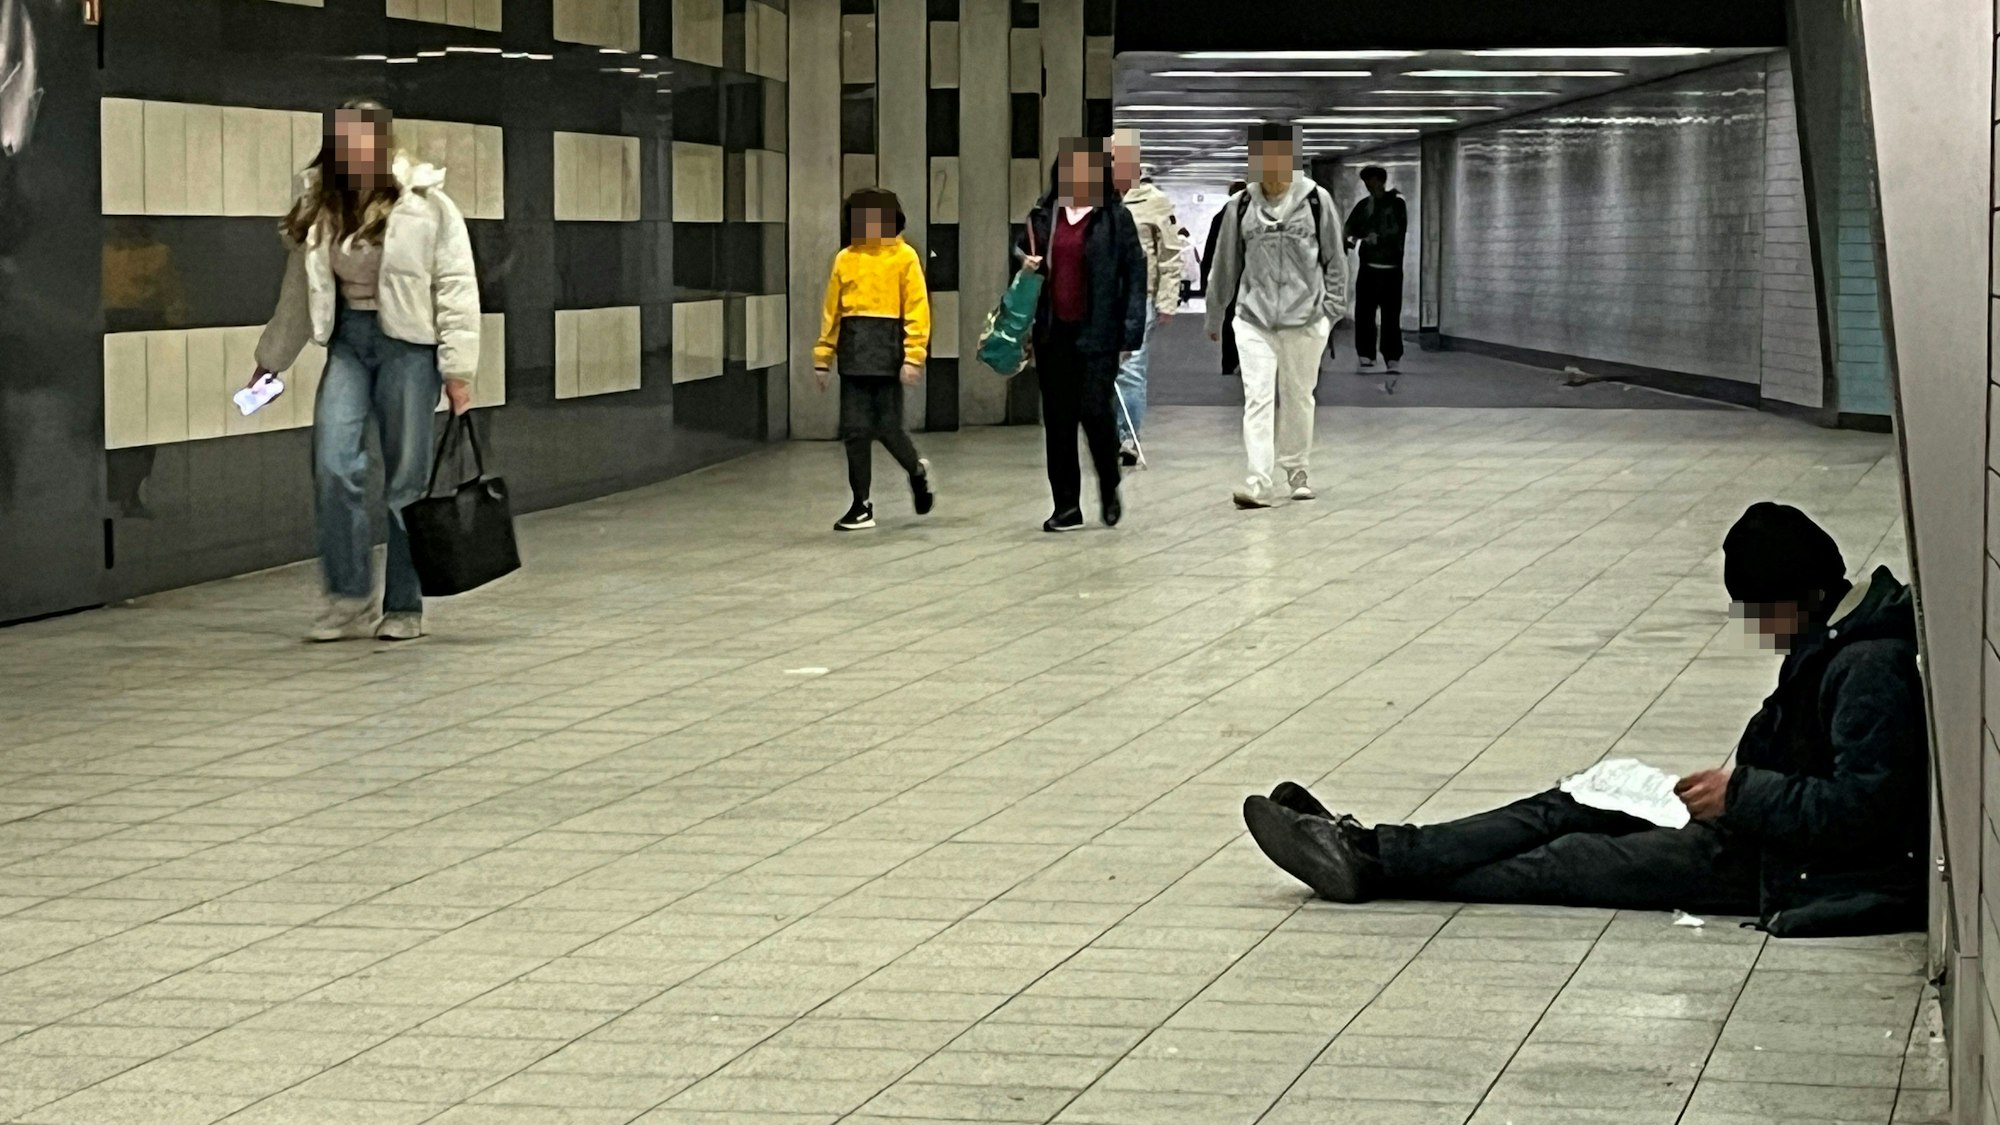 Drogenabhängiger sitzt auf dem Boden am Appellhofplatz und bereitet seinen nächsten Schuss vor, während Passanten vorbei gehen.